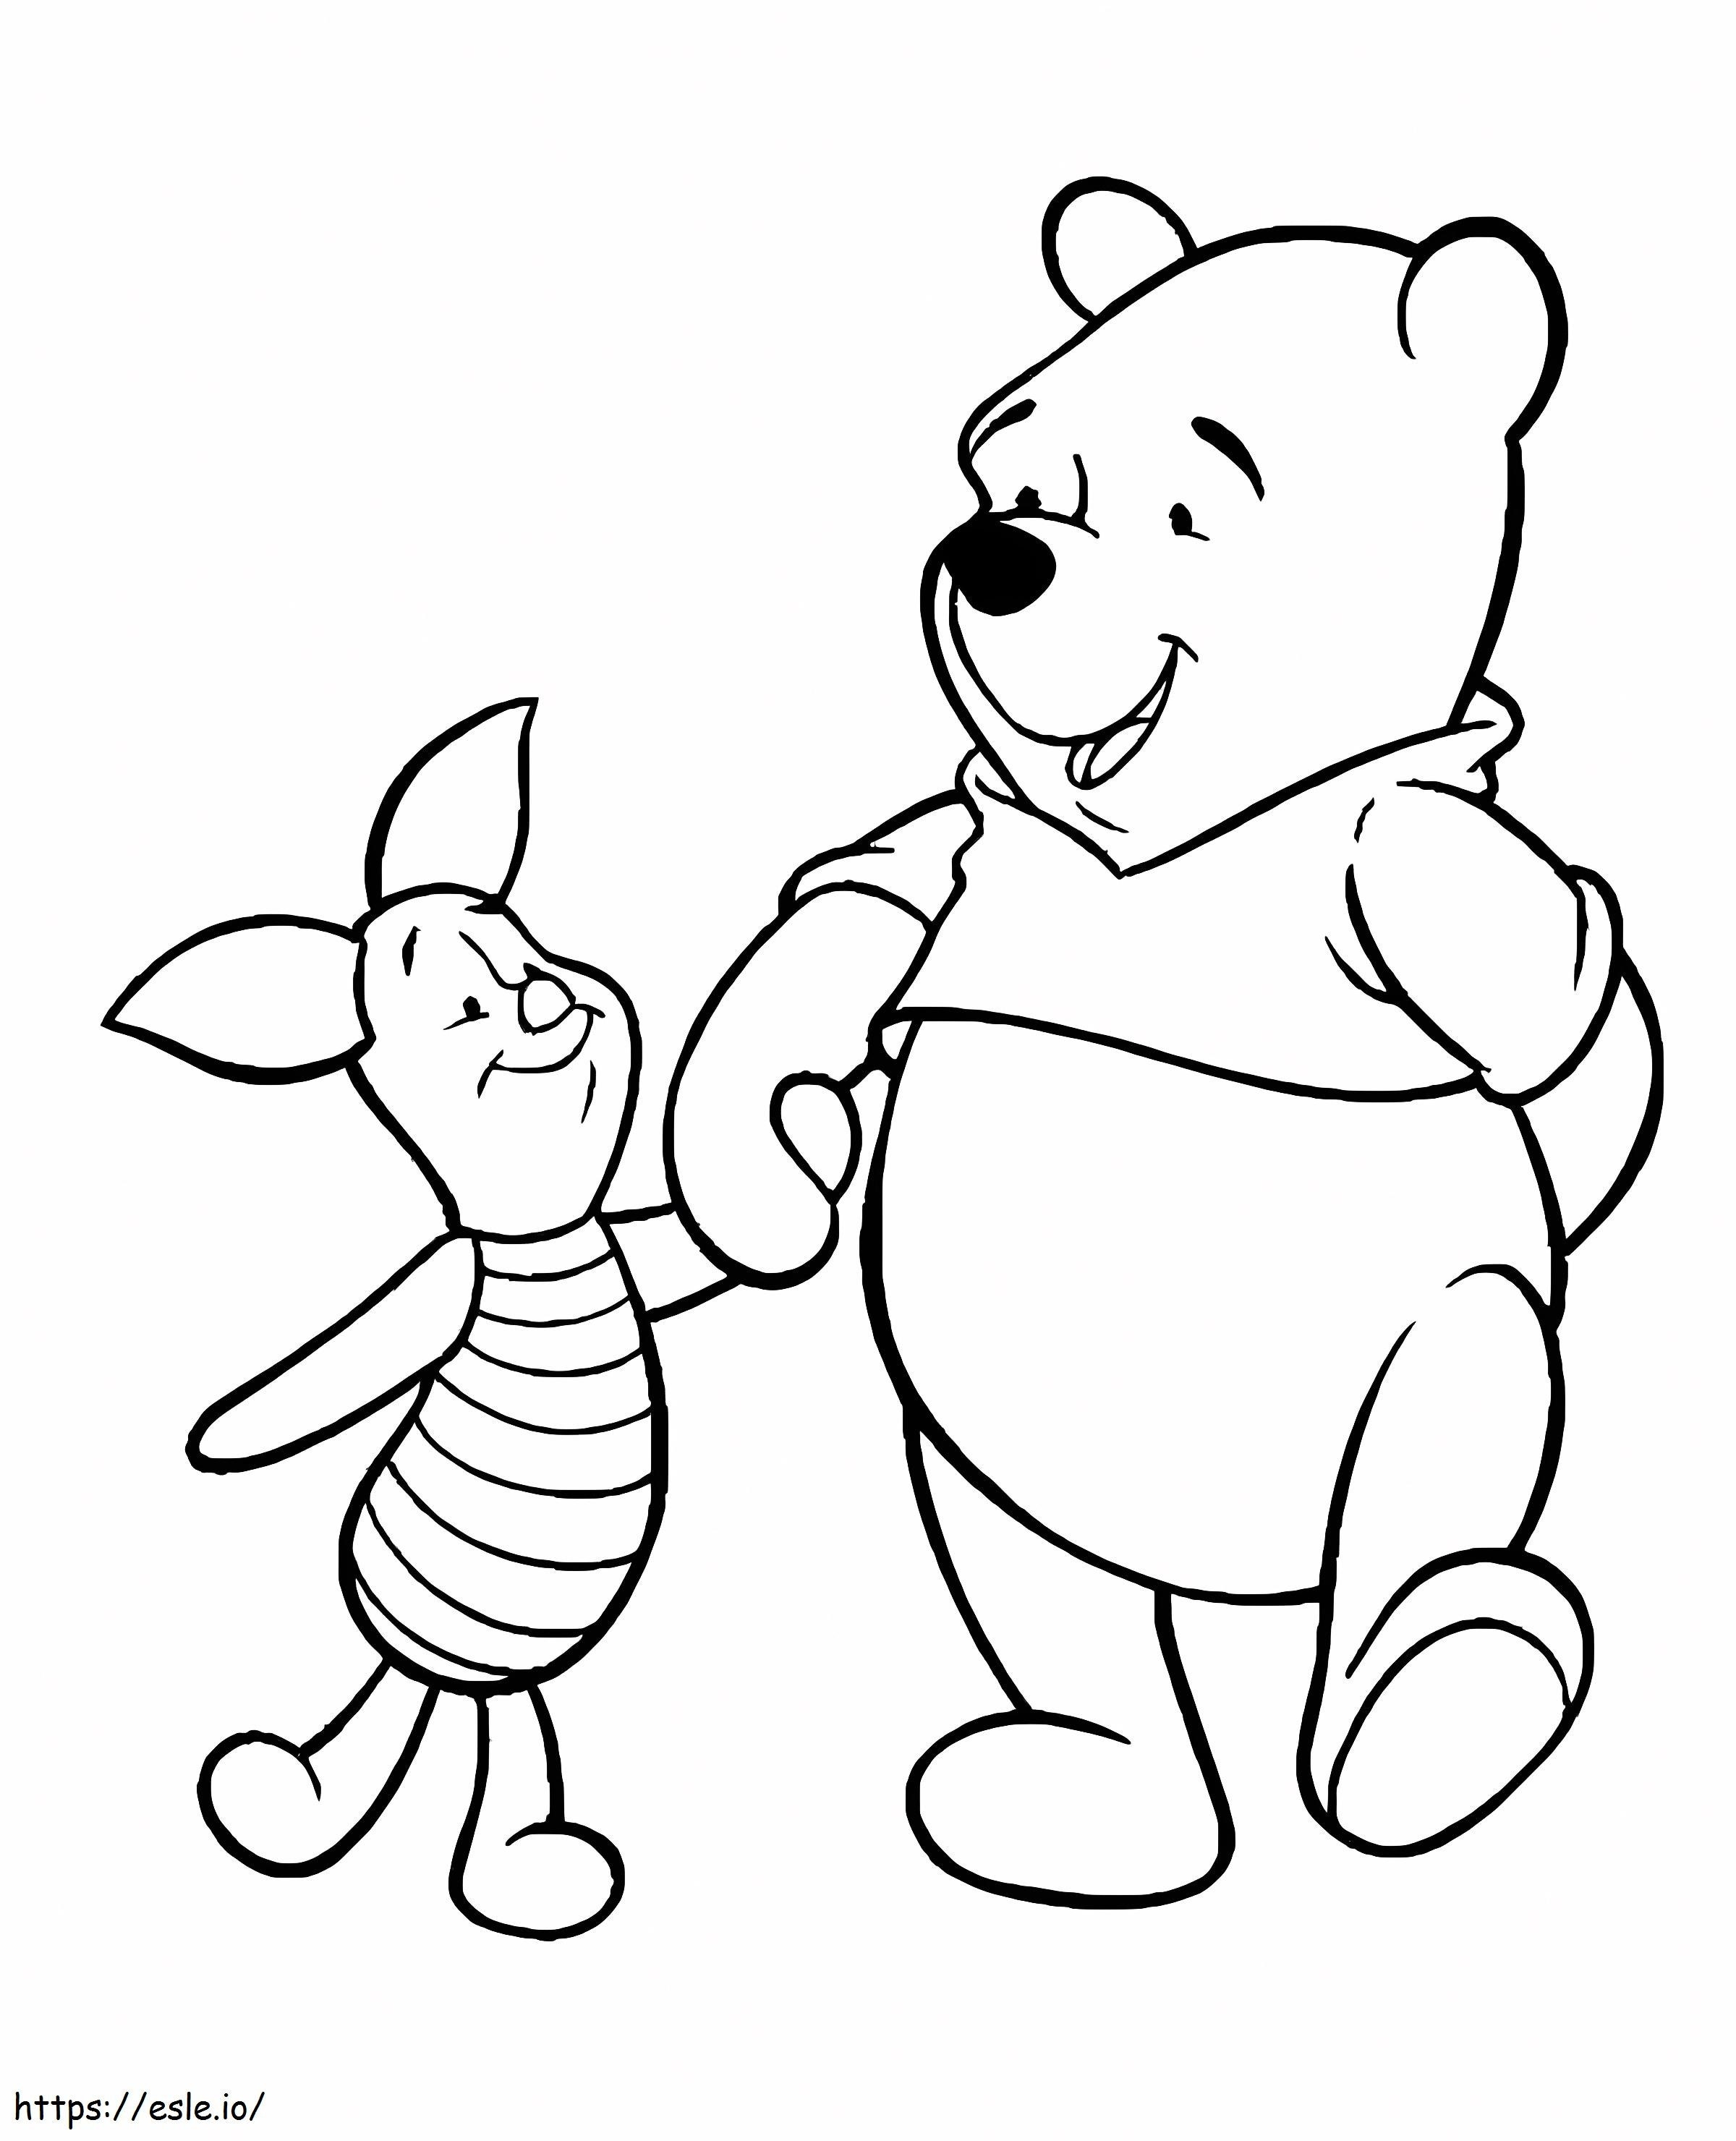 Leitão e Pooh de mãos dadas para colorir